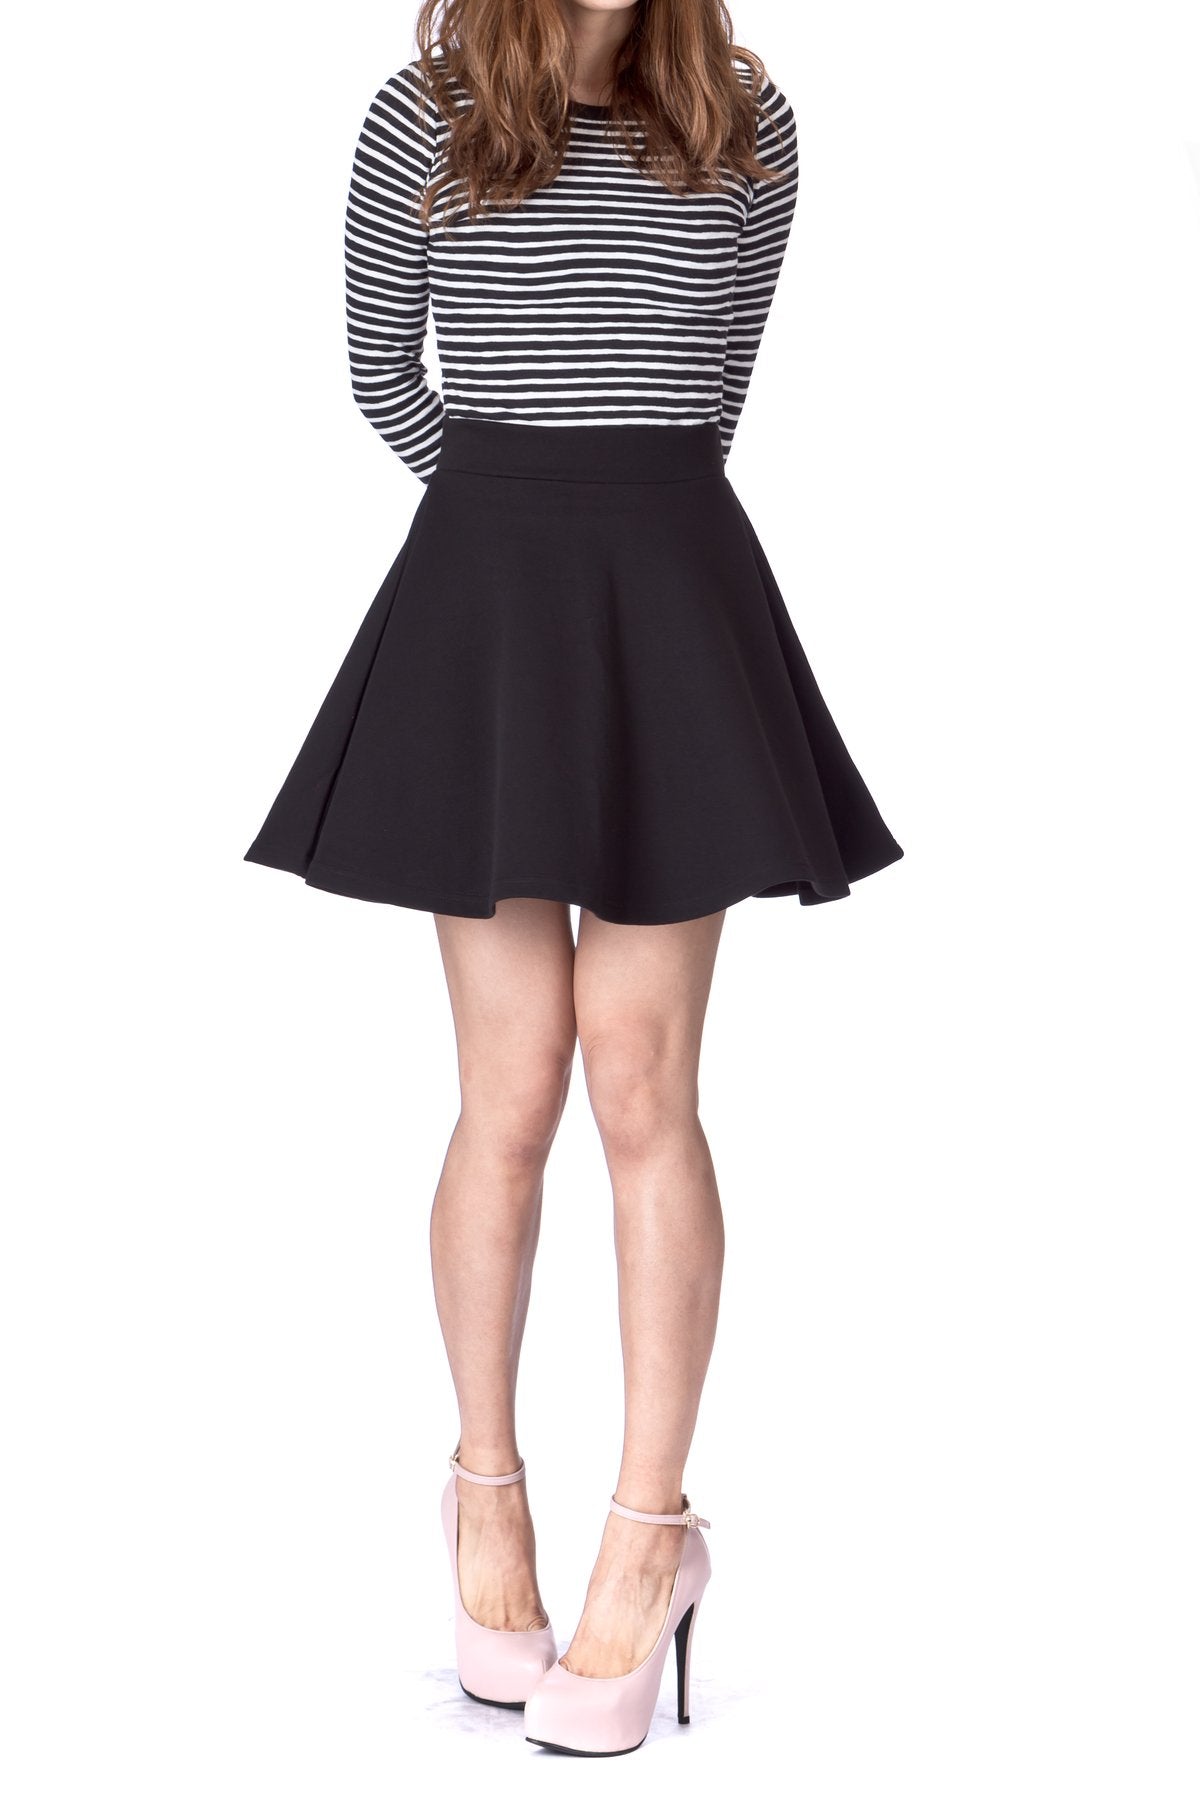 Women's Basics High Waisted Micro Fit & Flare Skater Skirt